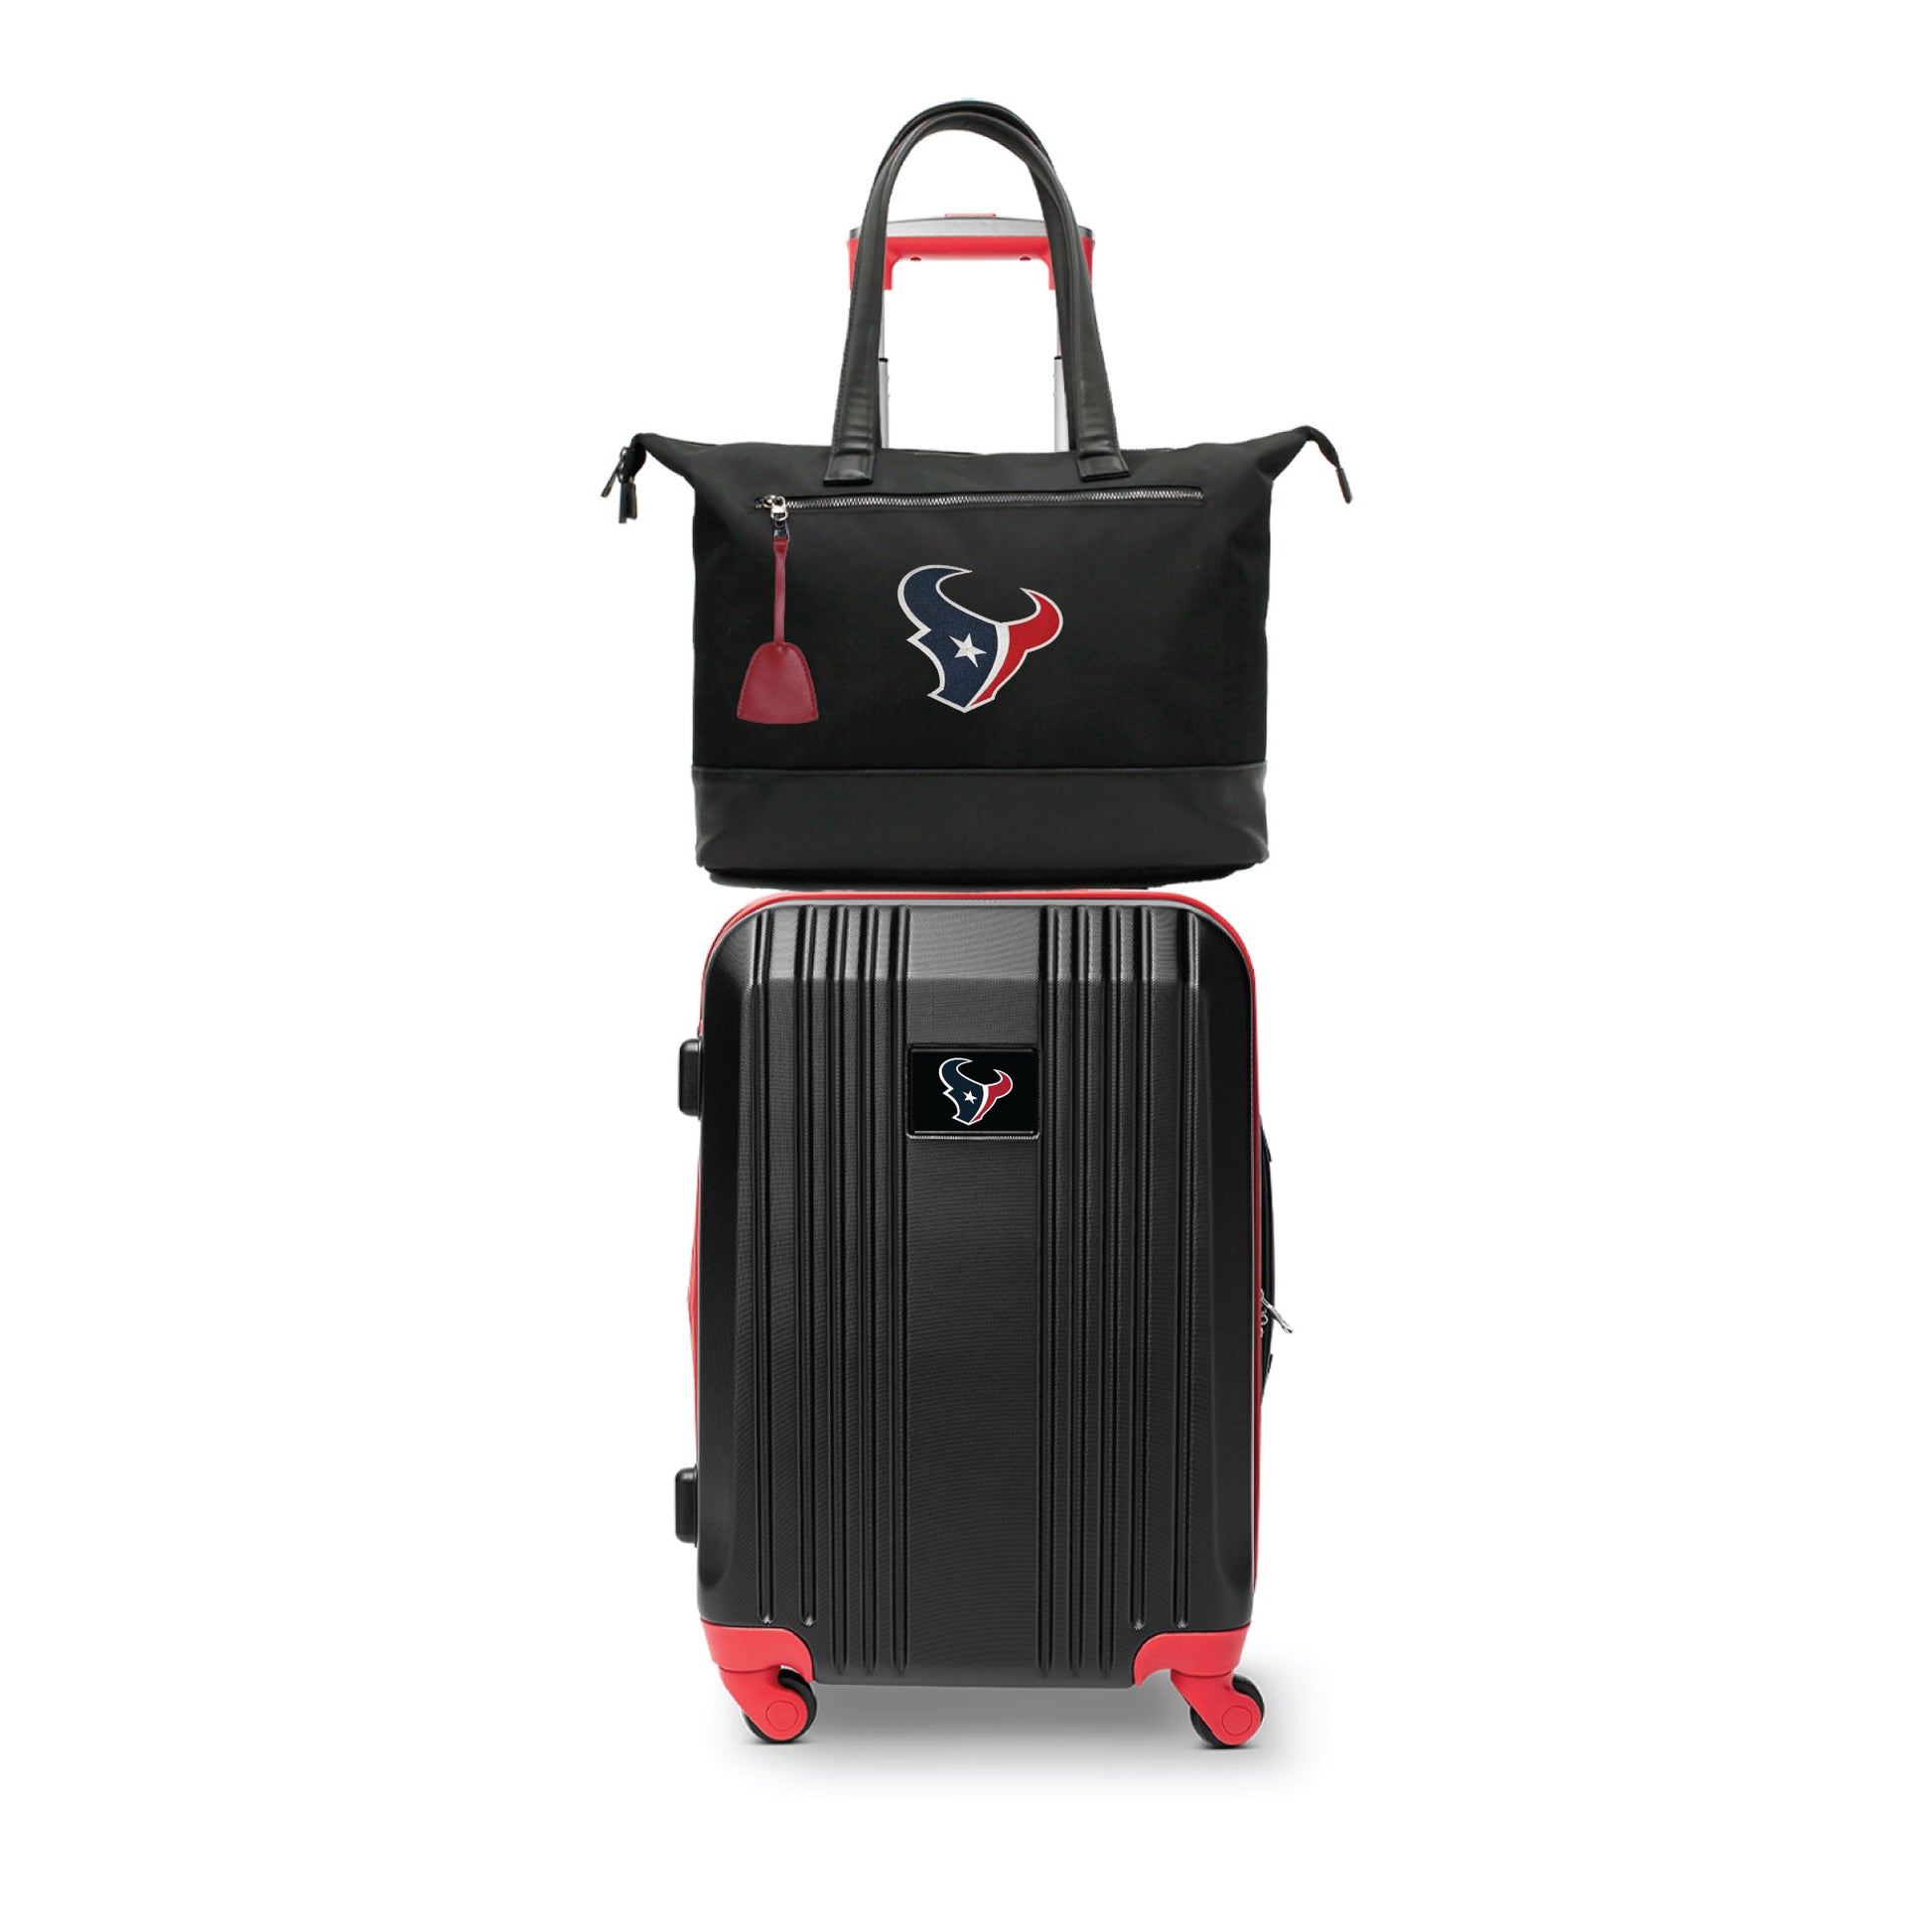 Houston Texans Premium Laptop Tote Bag and Luggage Set